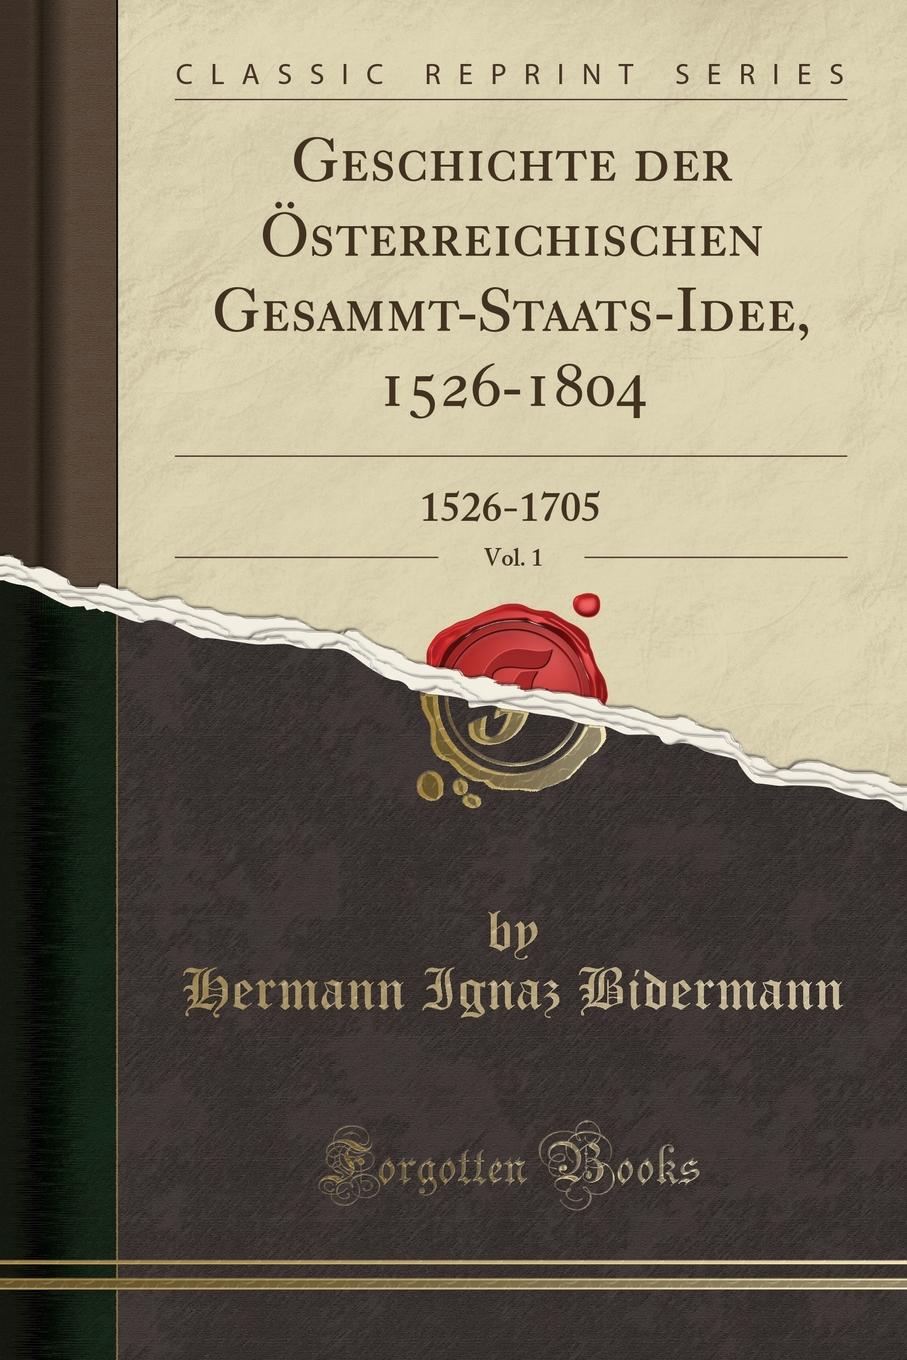 Hermann Ignaz Bidermann Geschichte der Osterreichischen Gesammt-Staats-Idee, 1526-1804, Vol. 1. 1526-1705 (Classic Reprint)